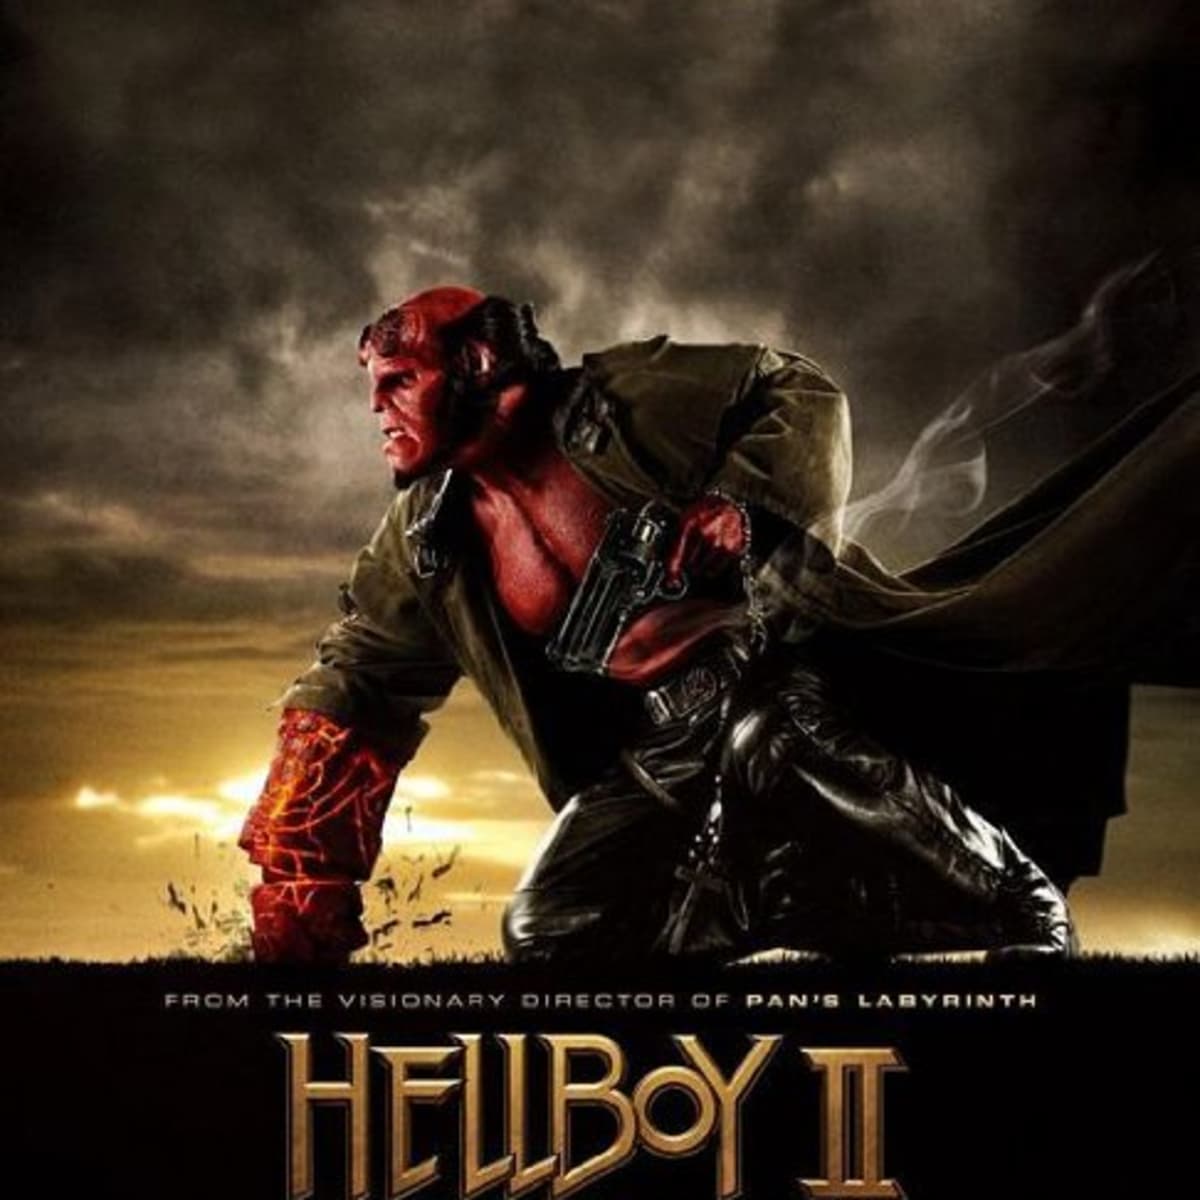 Hellboy: watch online in high quality (HD) | Movie 2019 year